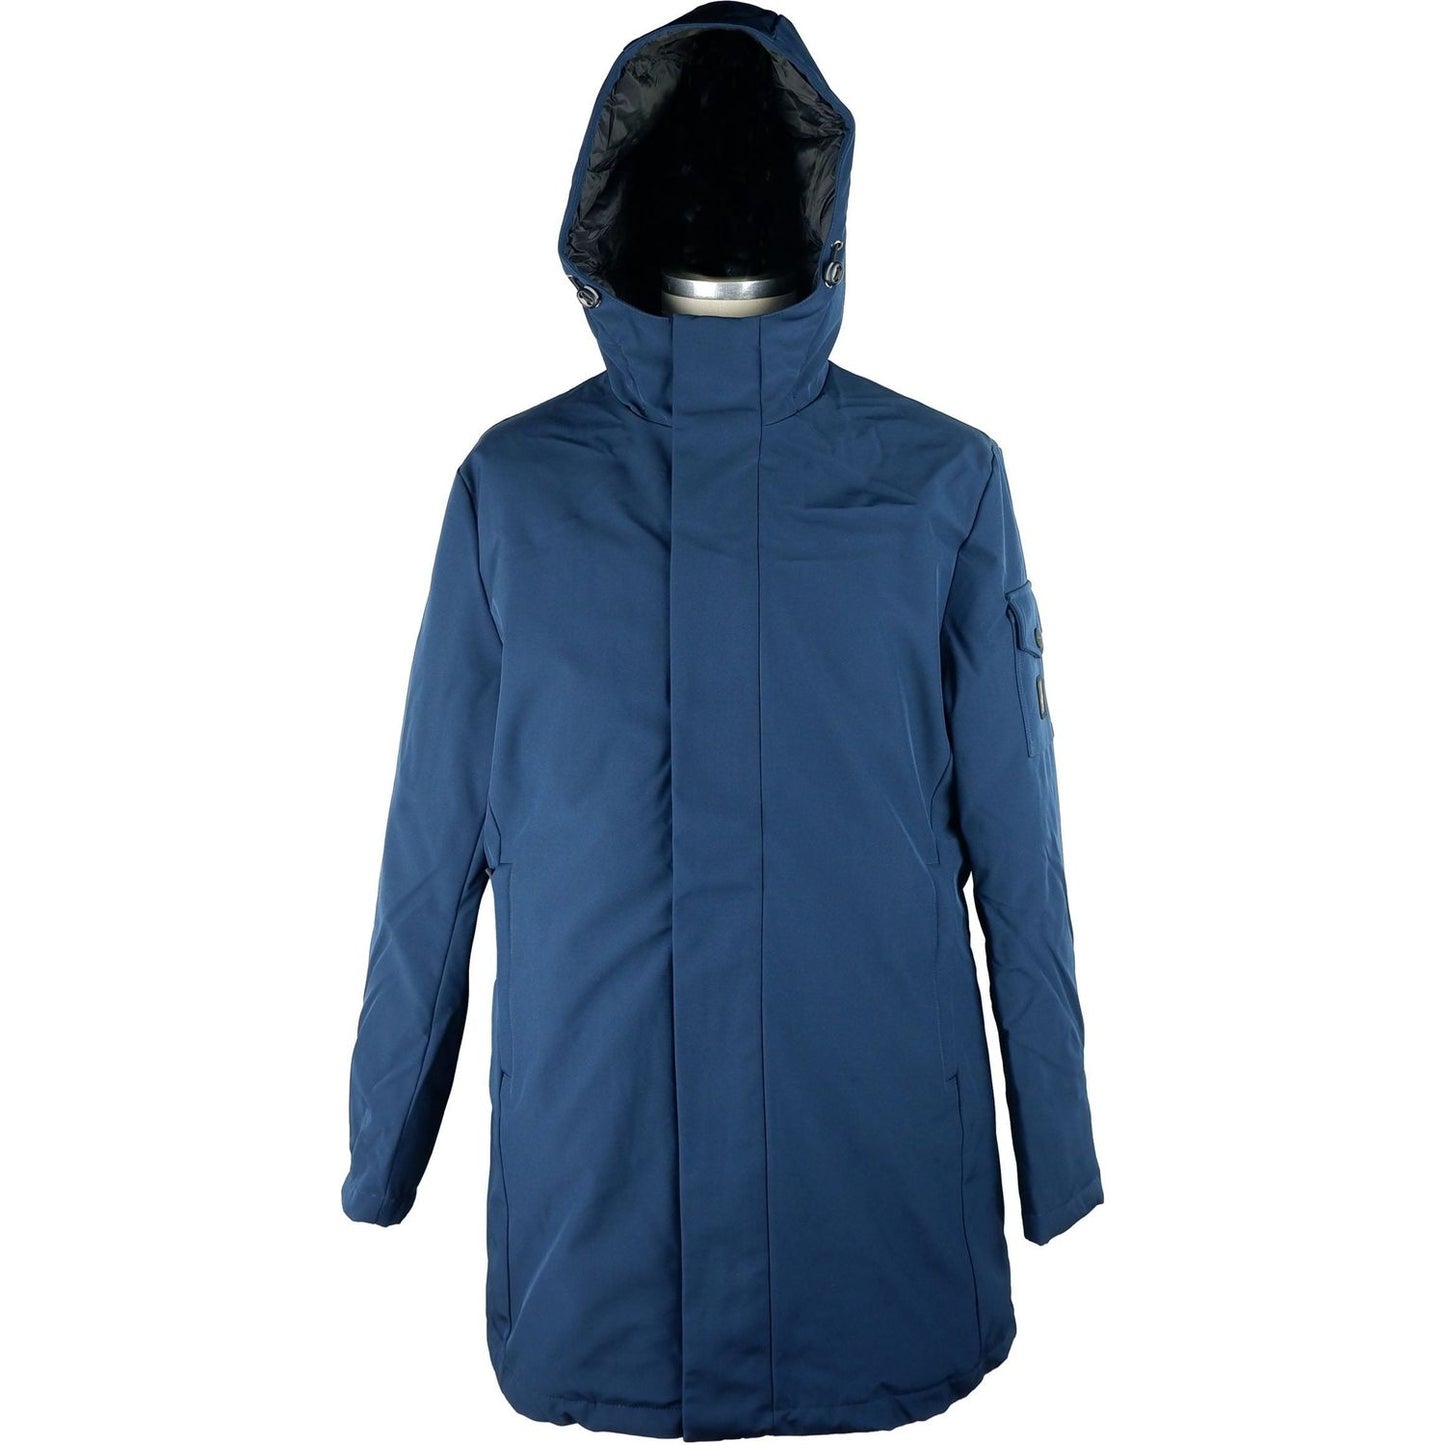 Refrigiwear Elegant Men's Long Jacket with Hood MAN COATS & JACKETS blue-polyester-jacket-3 stock_product_image_5264_1925046369-scaled-c9fb7e09-ab7.jpg